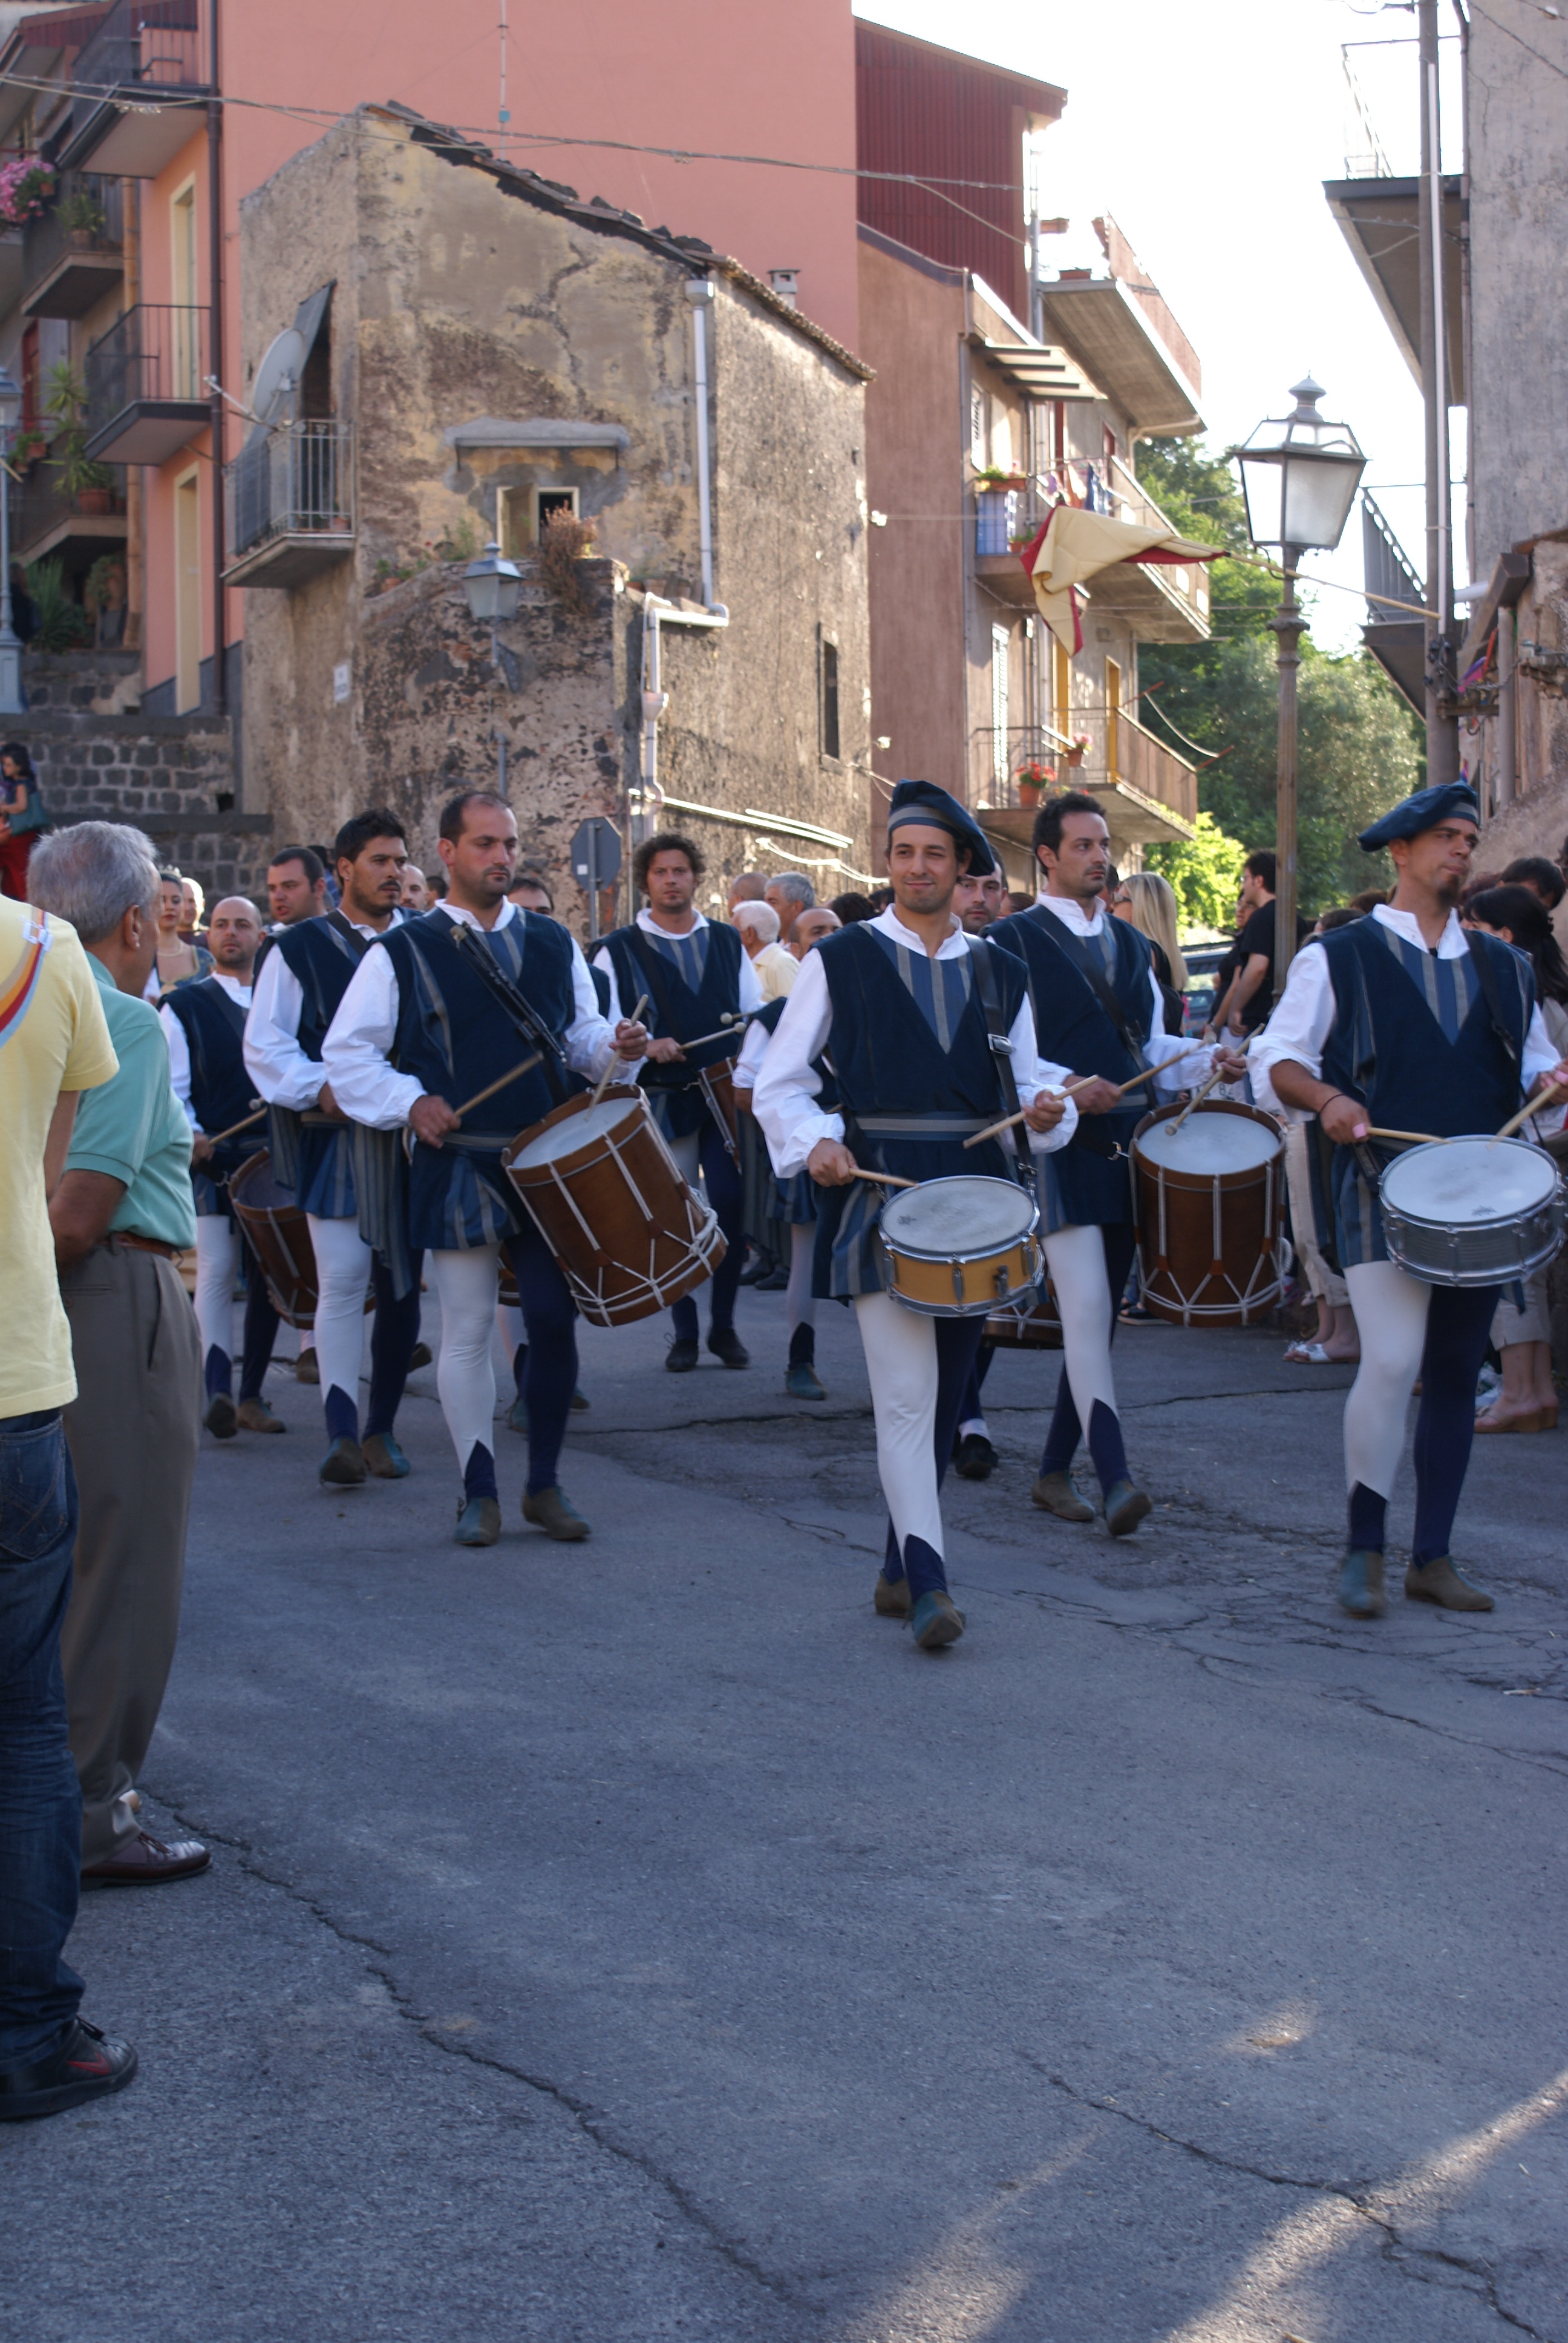 Festa Medievale di Randazzo (Ct). Corteo dei tamburi.